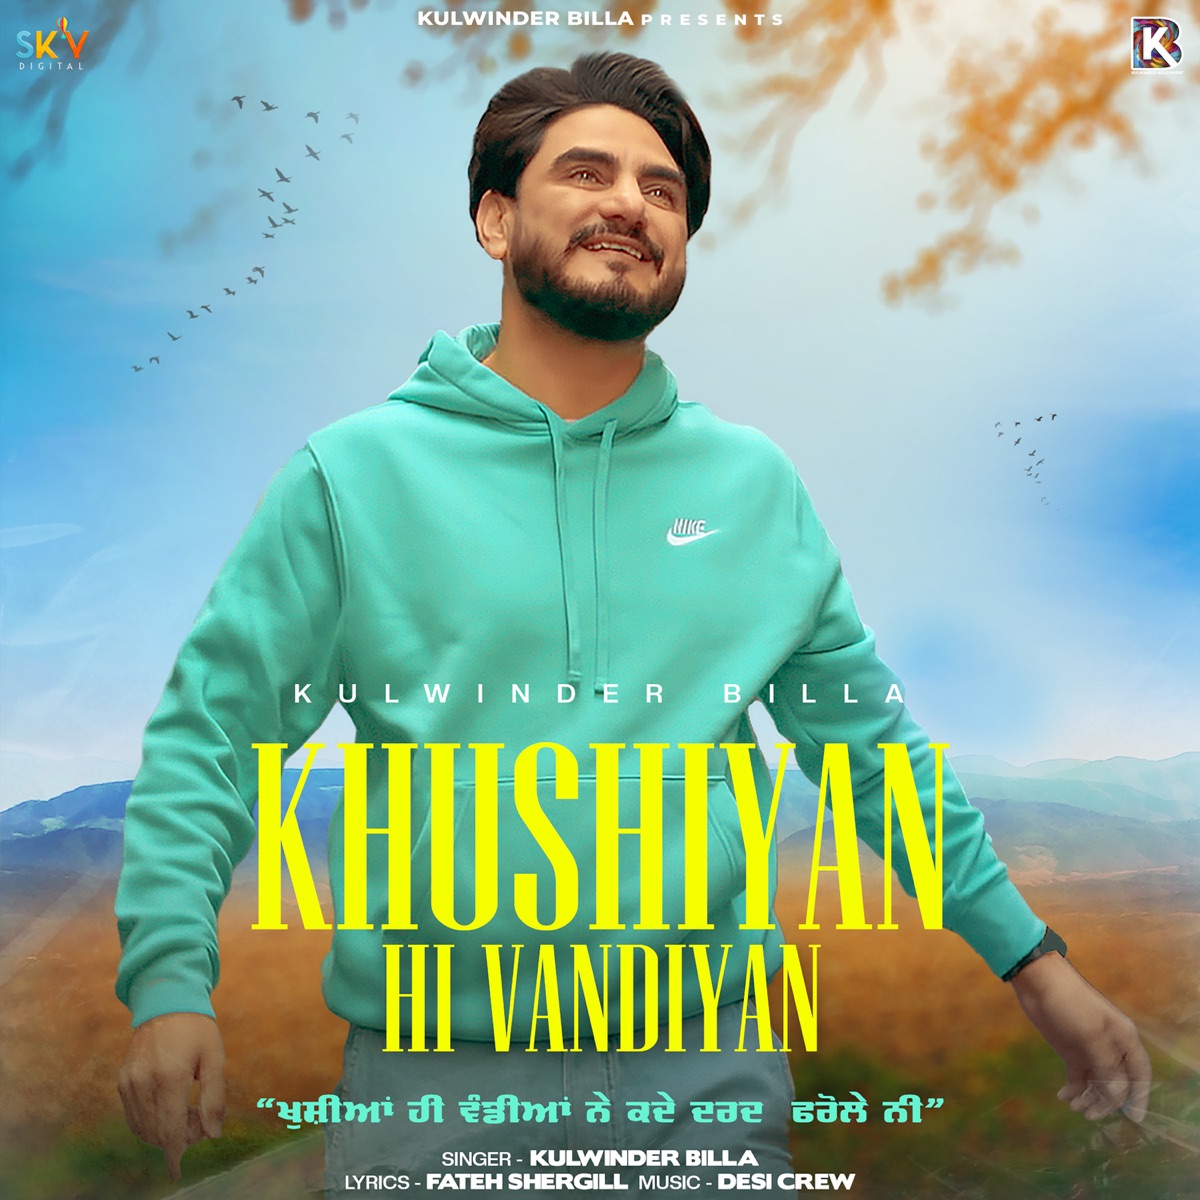 Khushiyan Hi Vandiyan - Single - Album by Kulwinder Billa - Apple Music